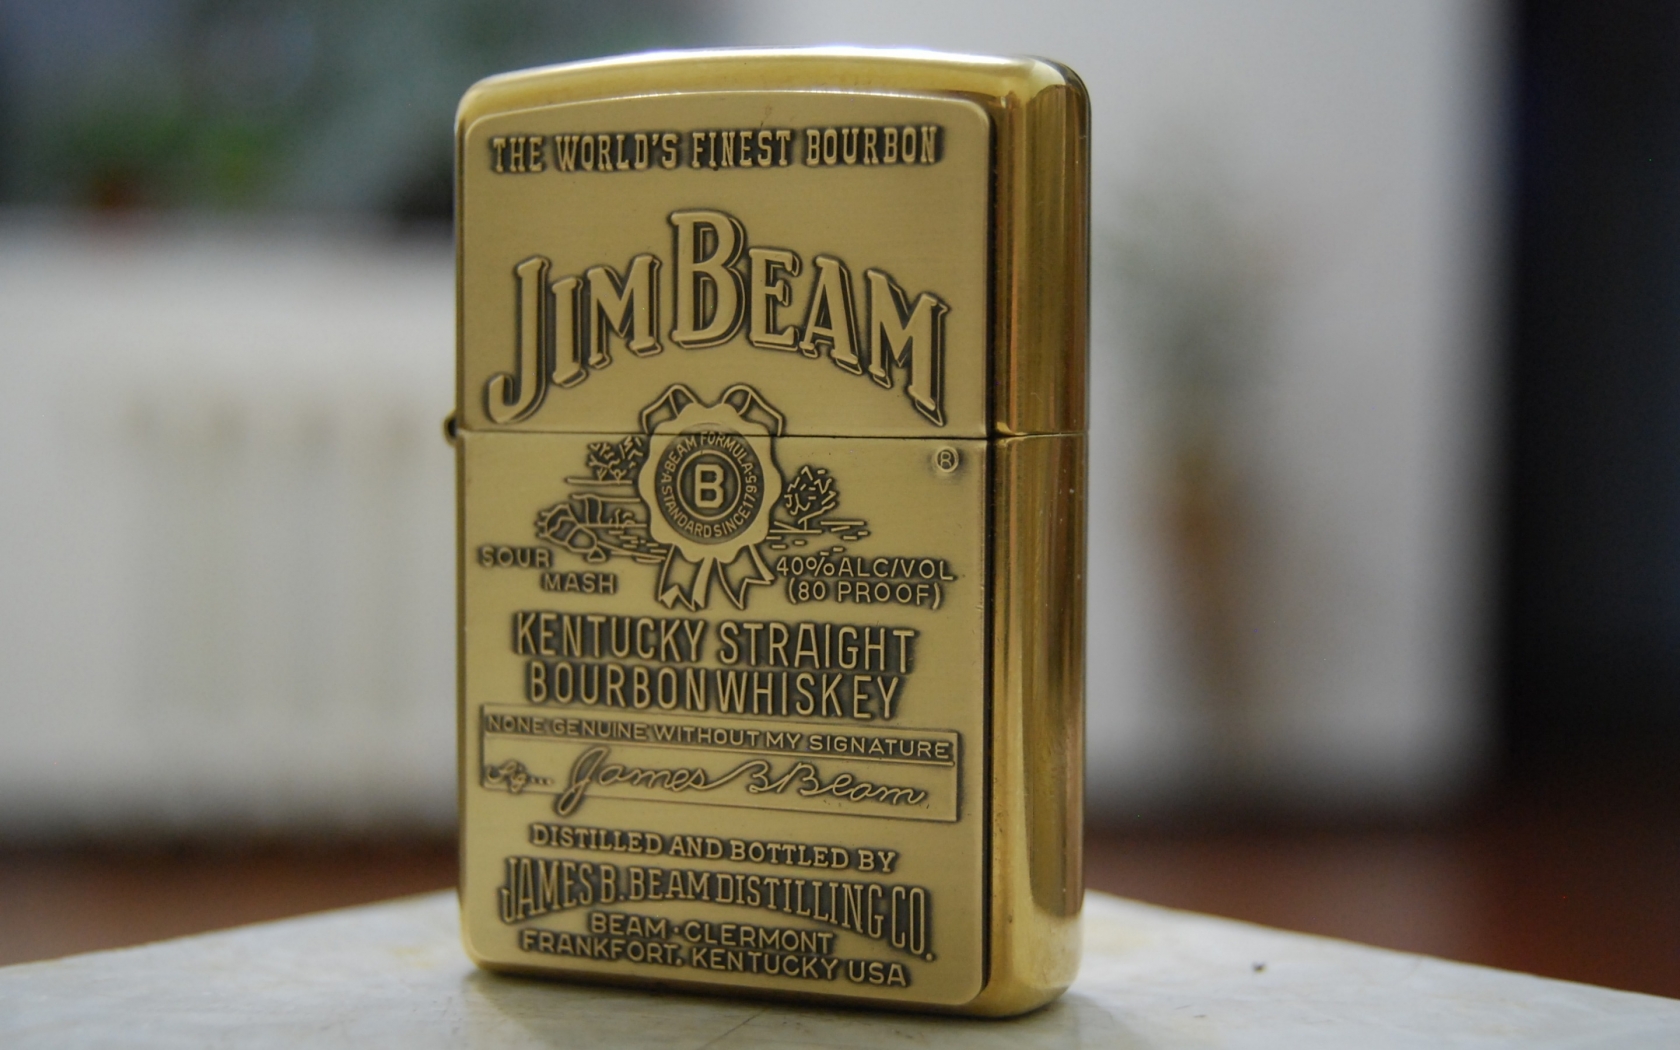 Jim Beam Zippo Lighter for 1680 x 1050 widescreen resolution